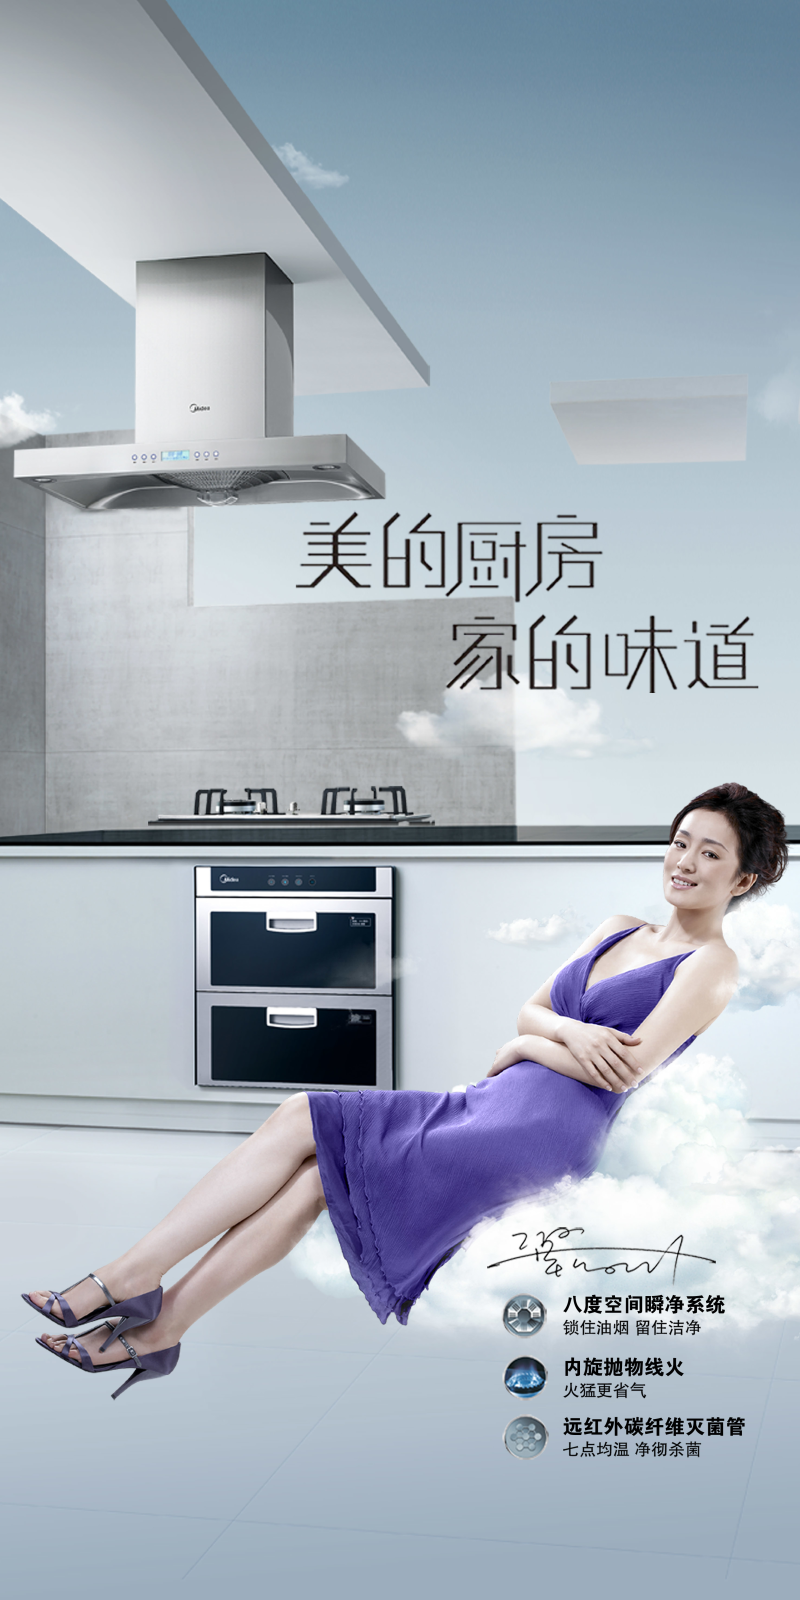 美的厨房电器宣传海报设计模板素材